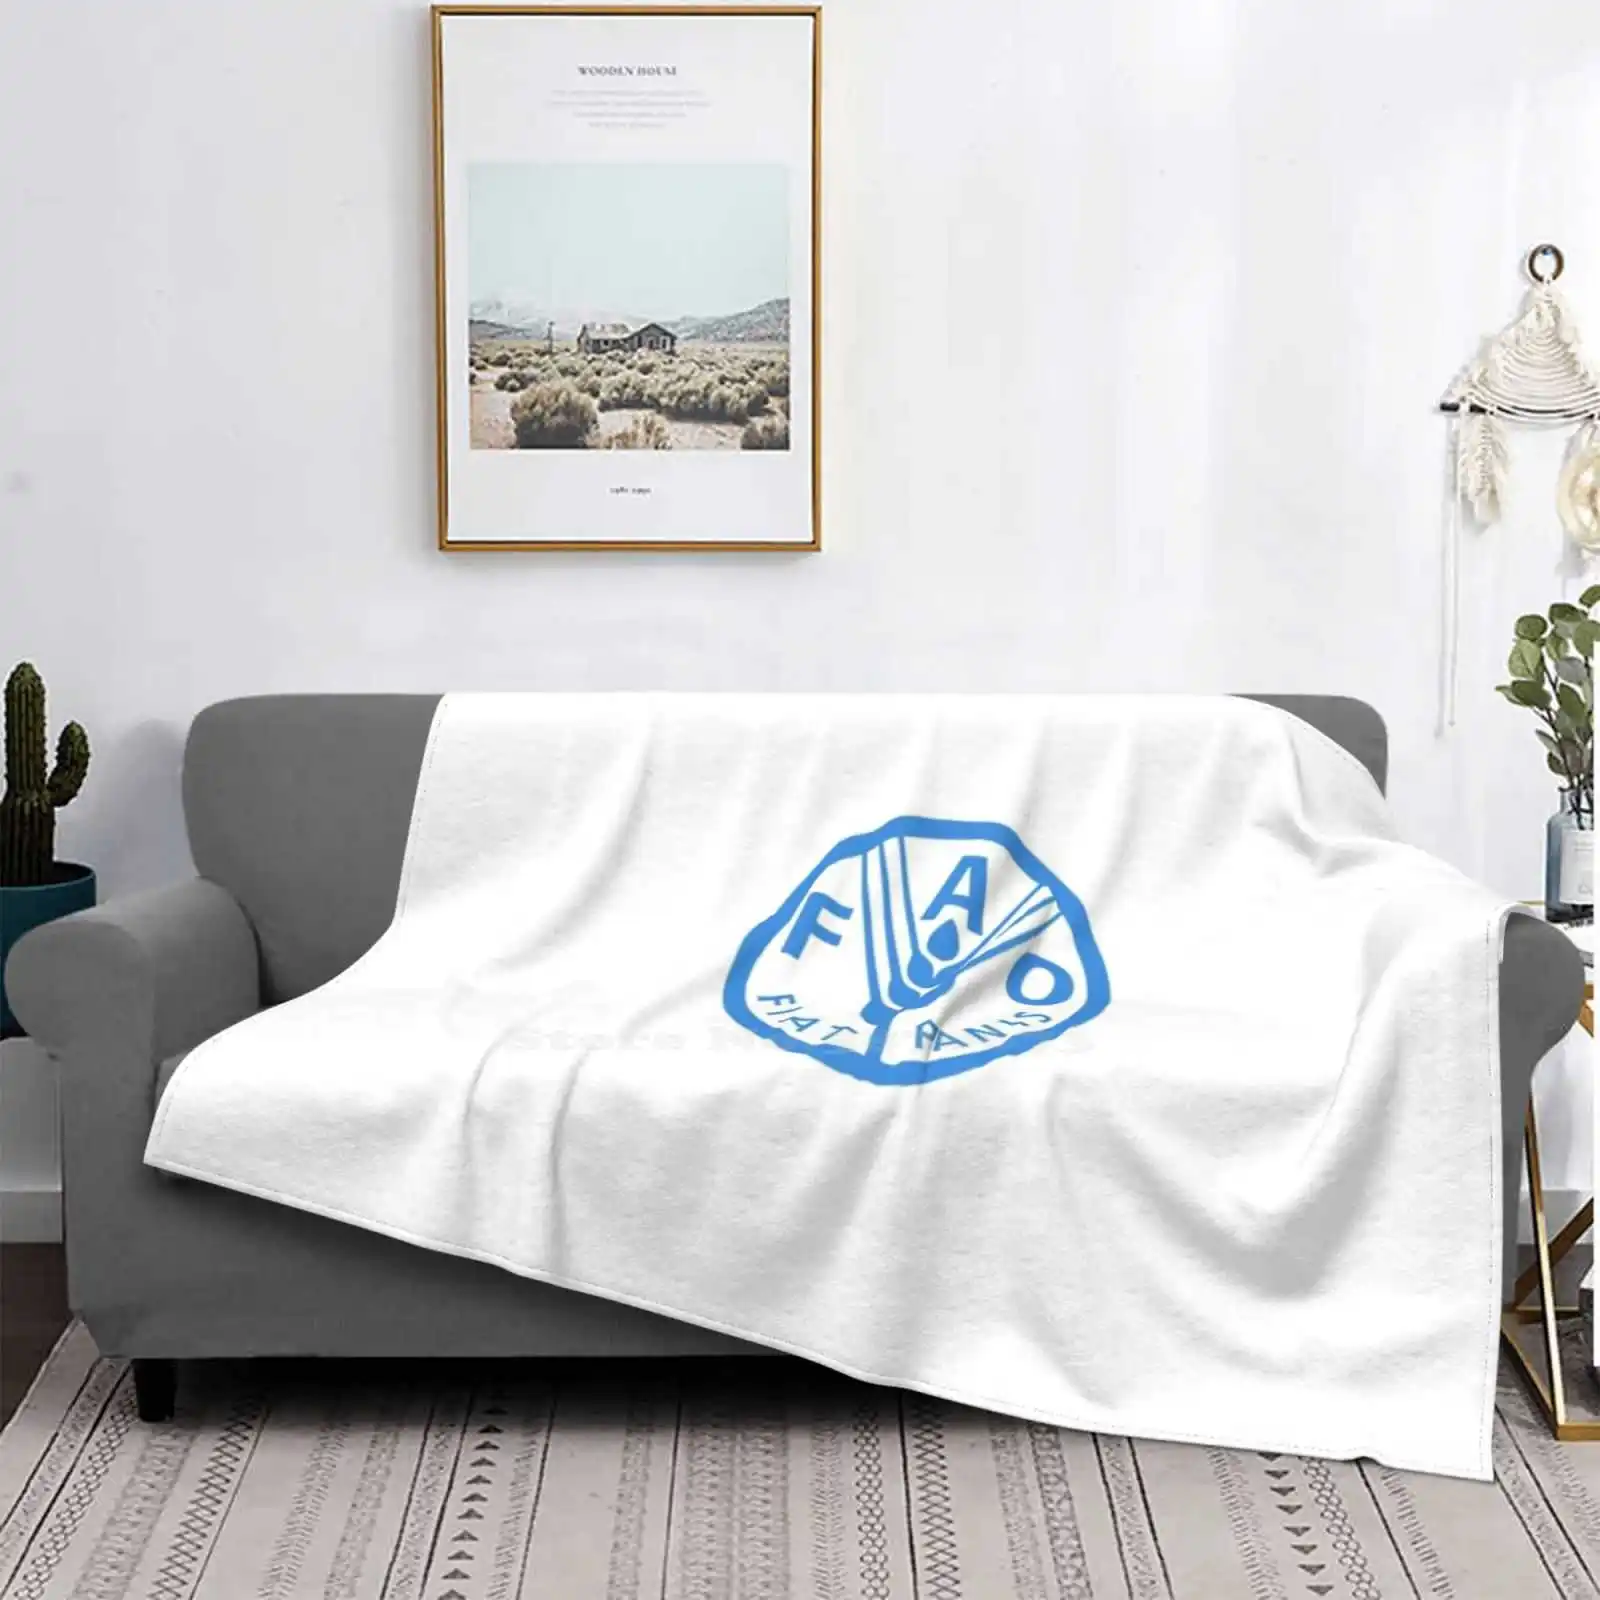 

Комфортное теплое мягкое одеяло Fao на четыре сезона, органическое Клубное агентство Организации ООН